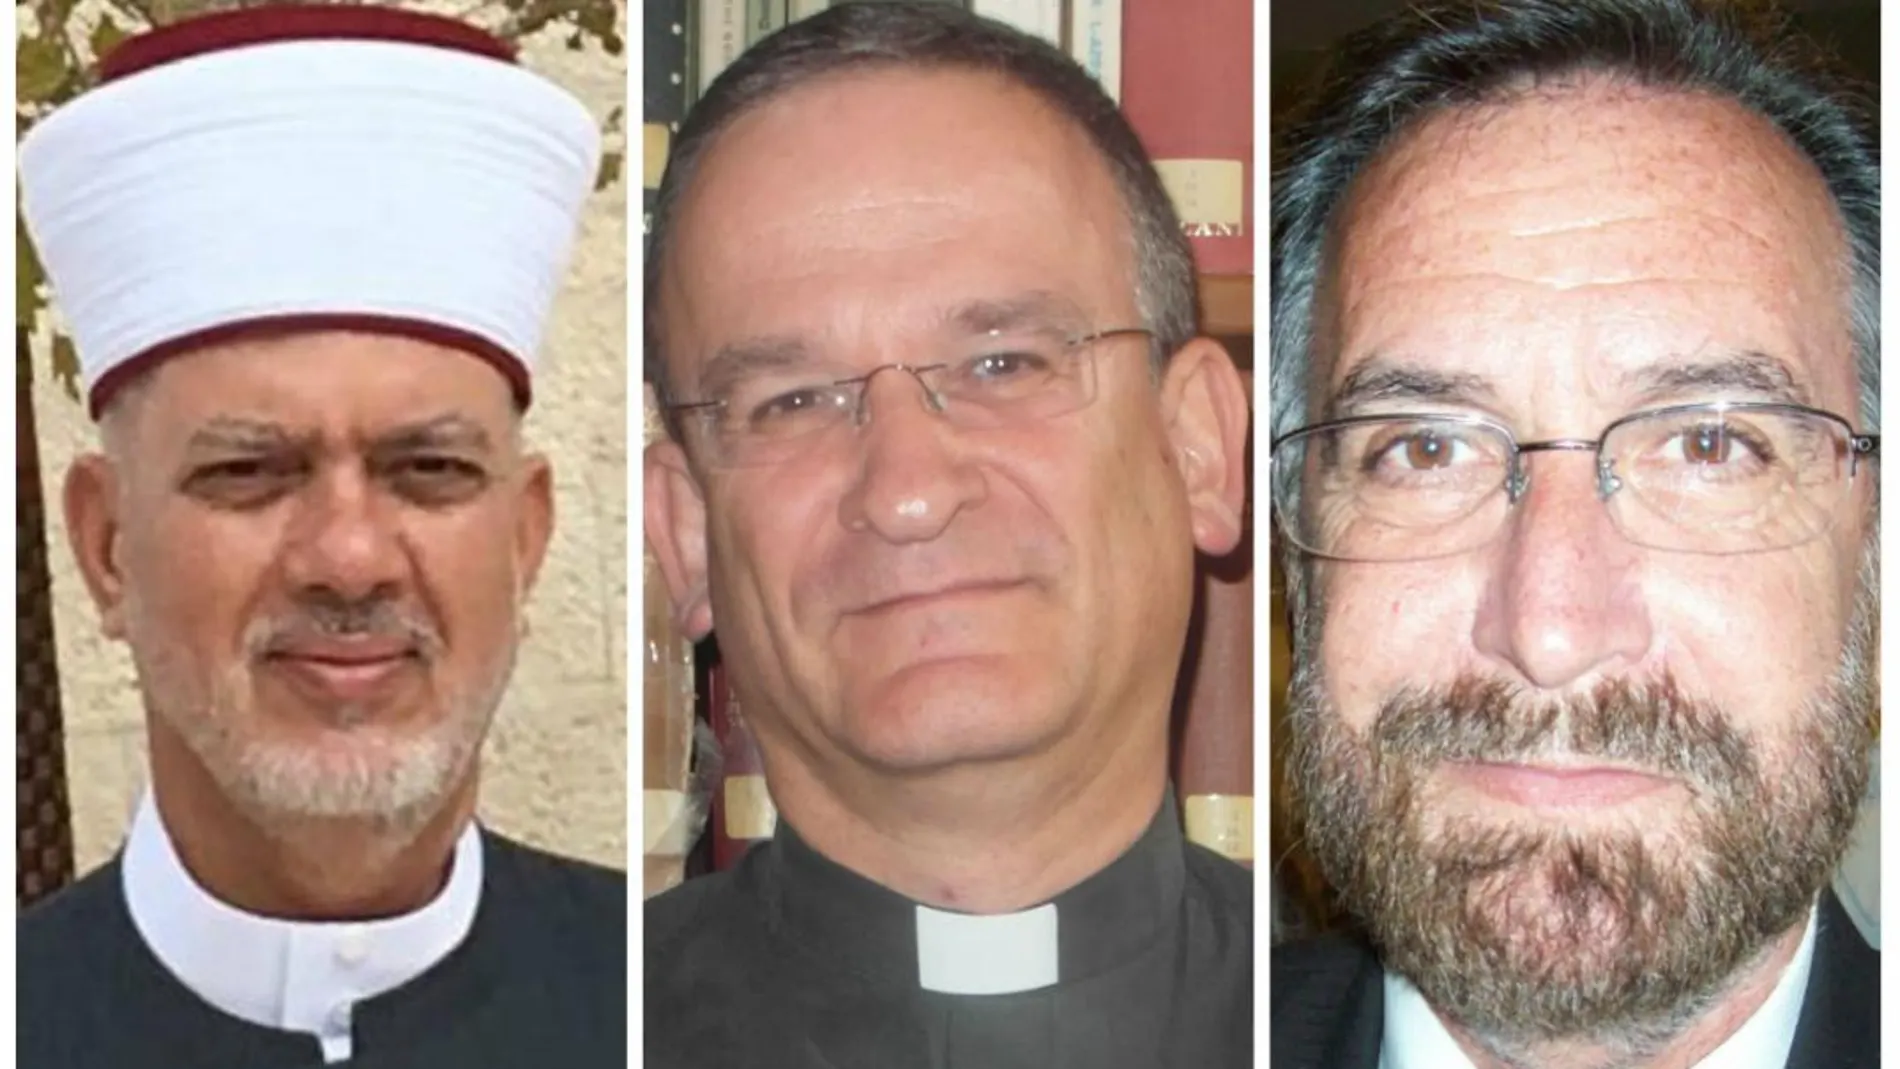 Los tres representantes de las tres religiones entrevistados.